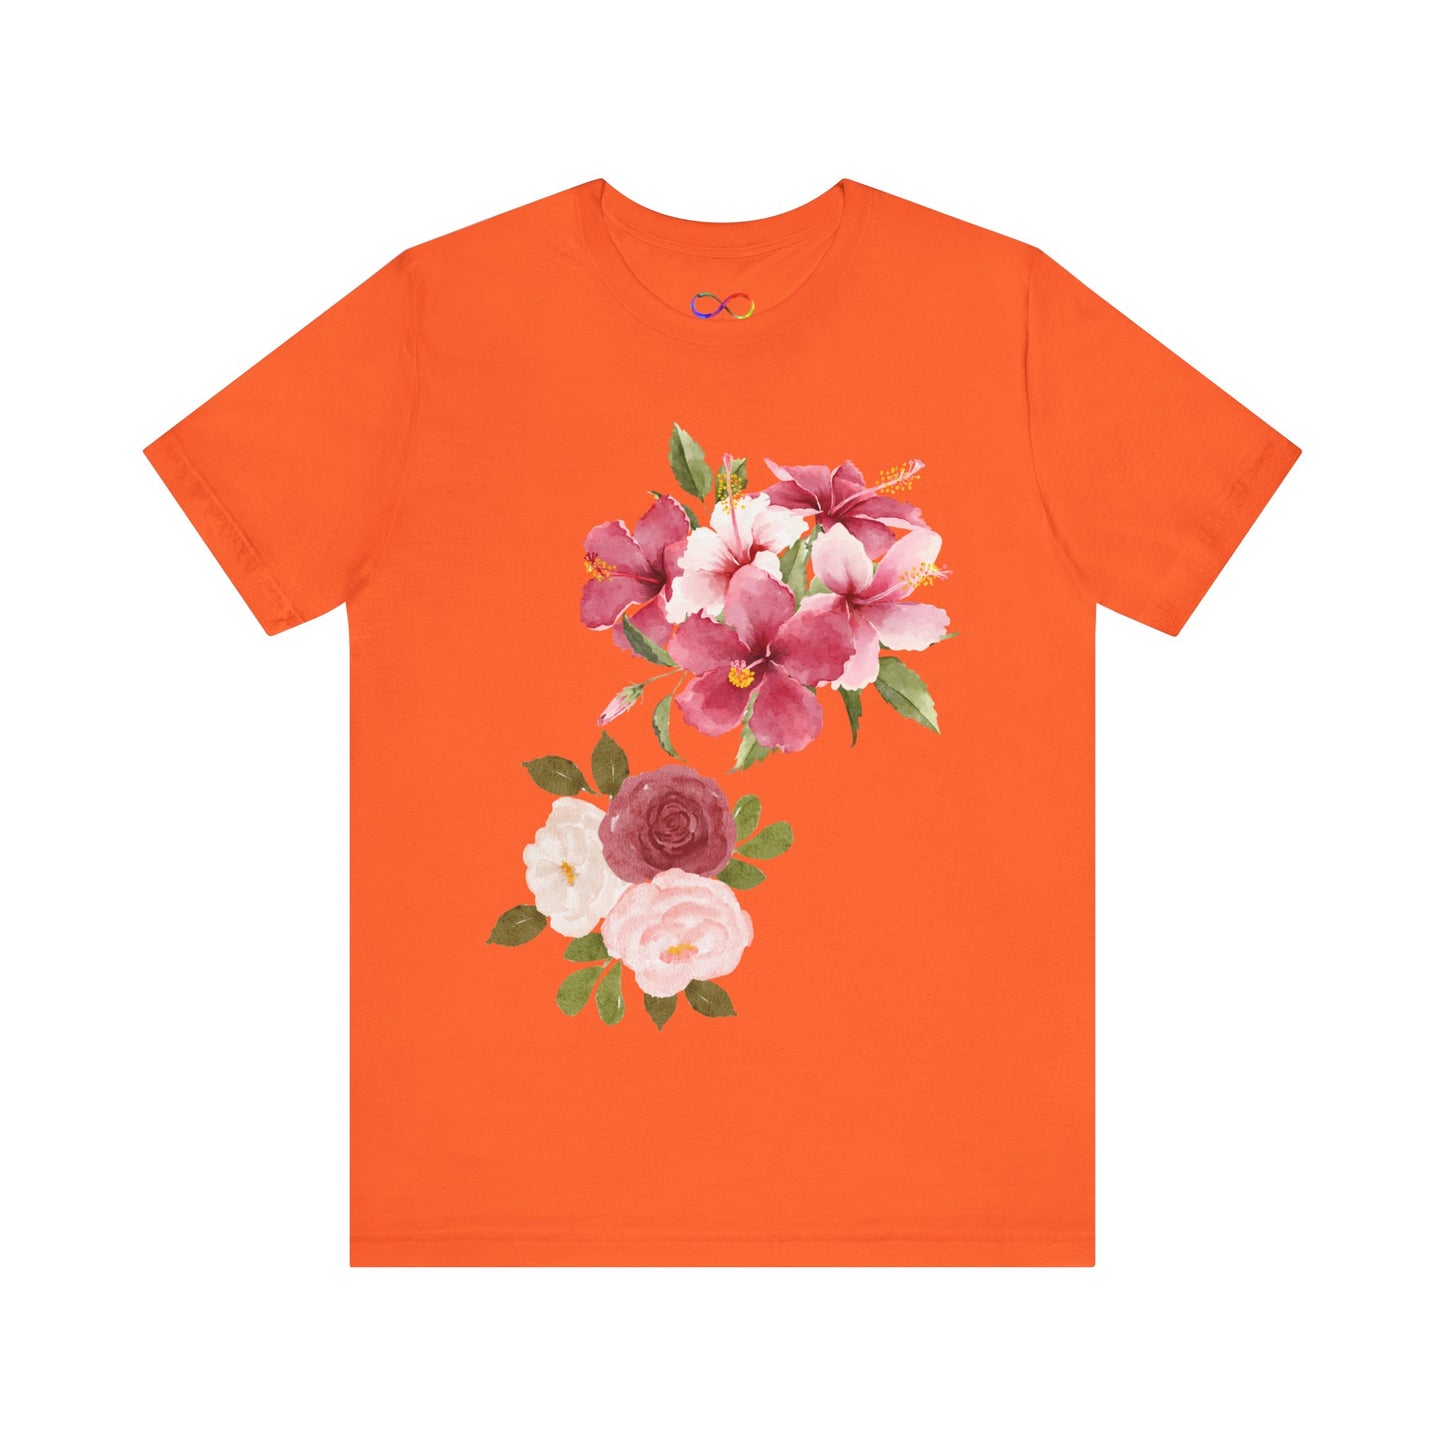 Colorful Floral Art t-shirt